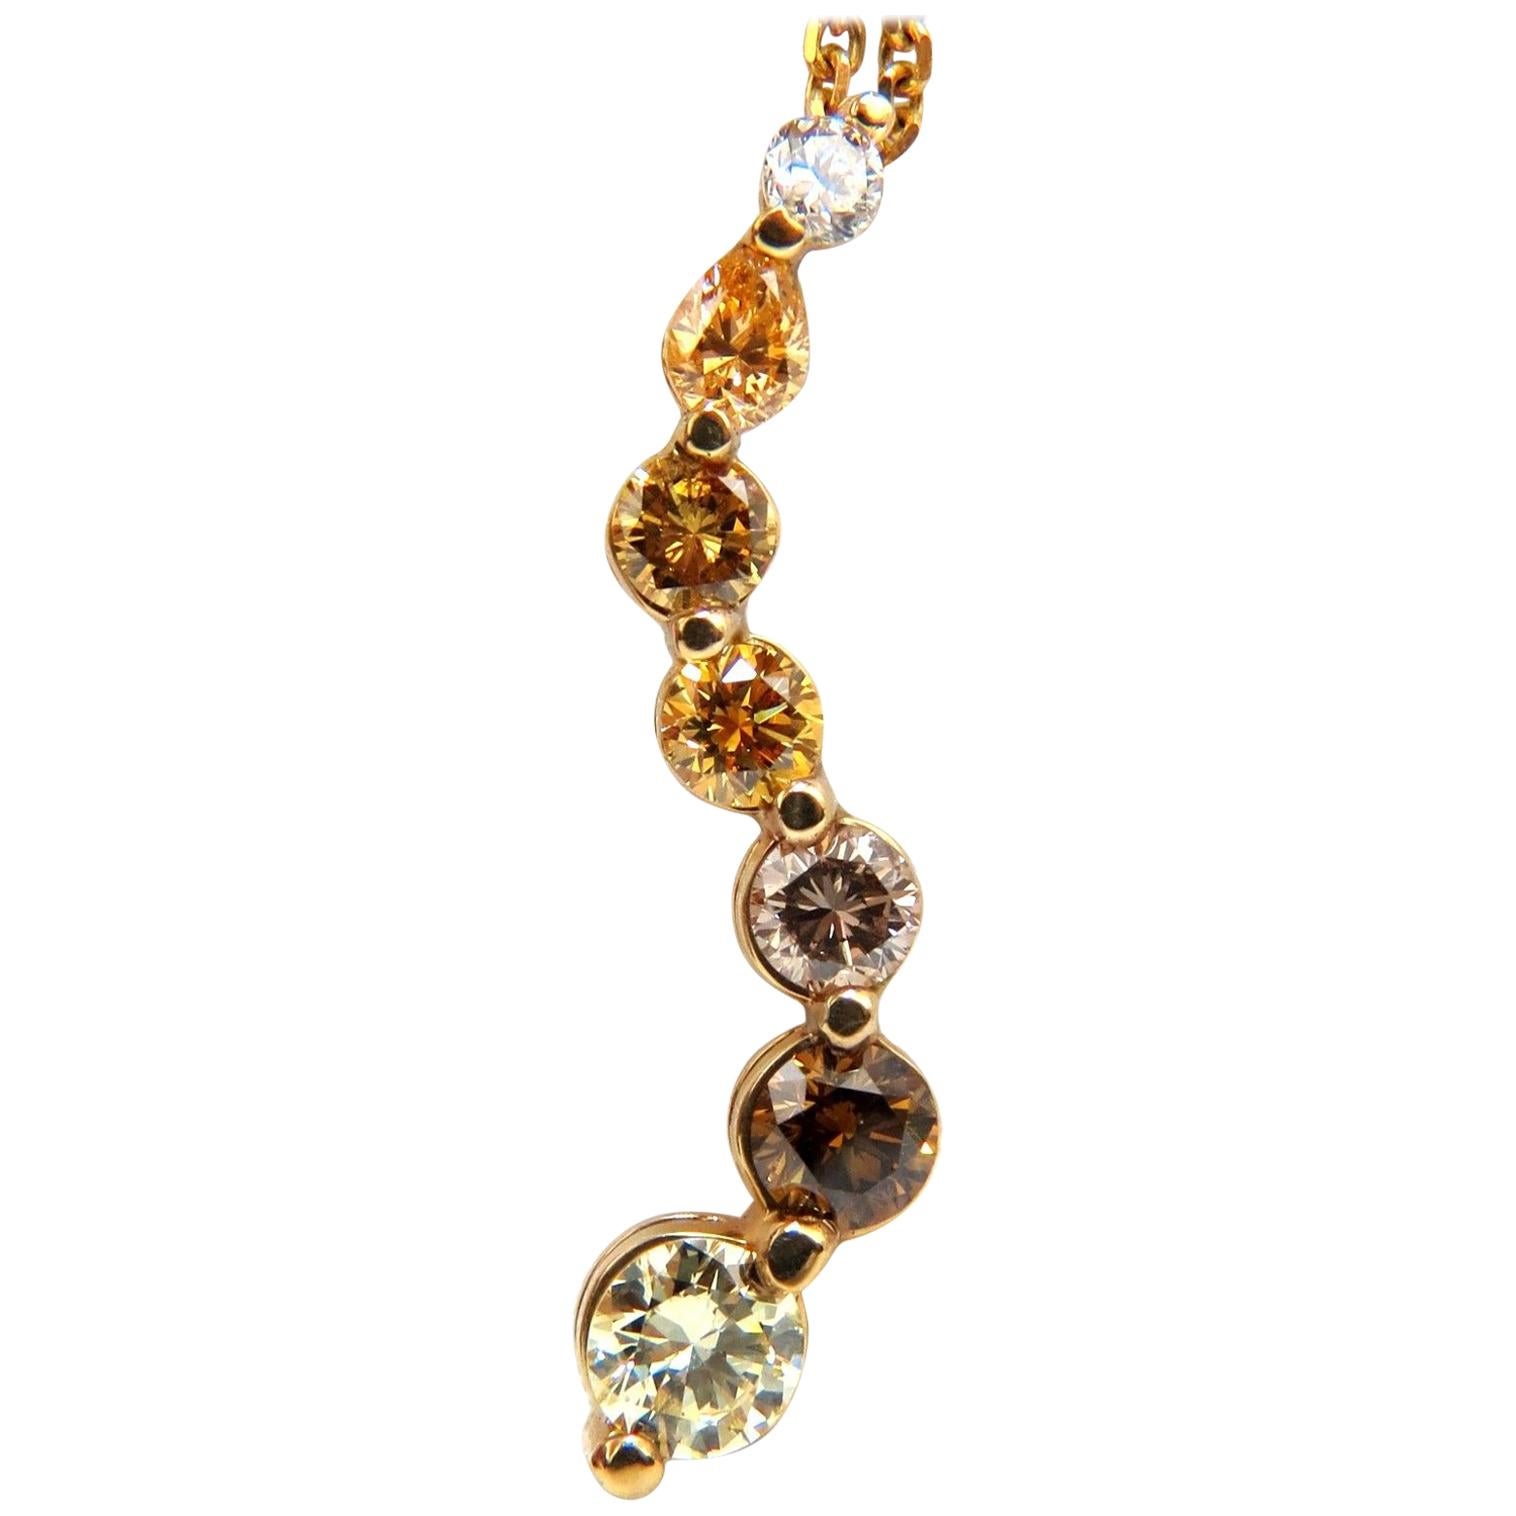 Chaîne à pendentif en diamants naturels de 2,06 carats de couleur jaune, orange, brun clair et rose